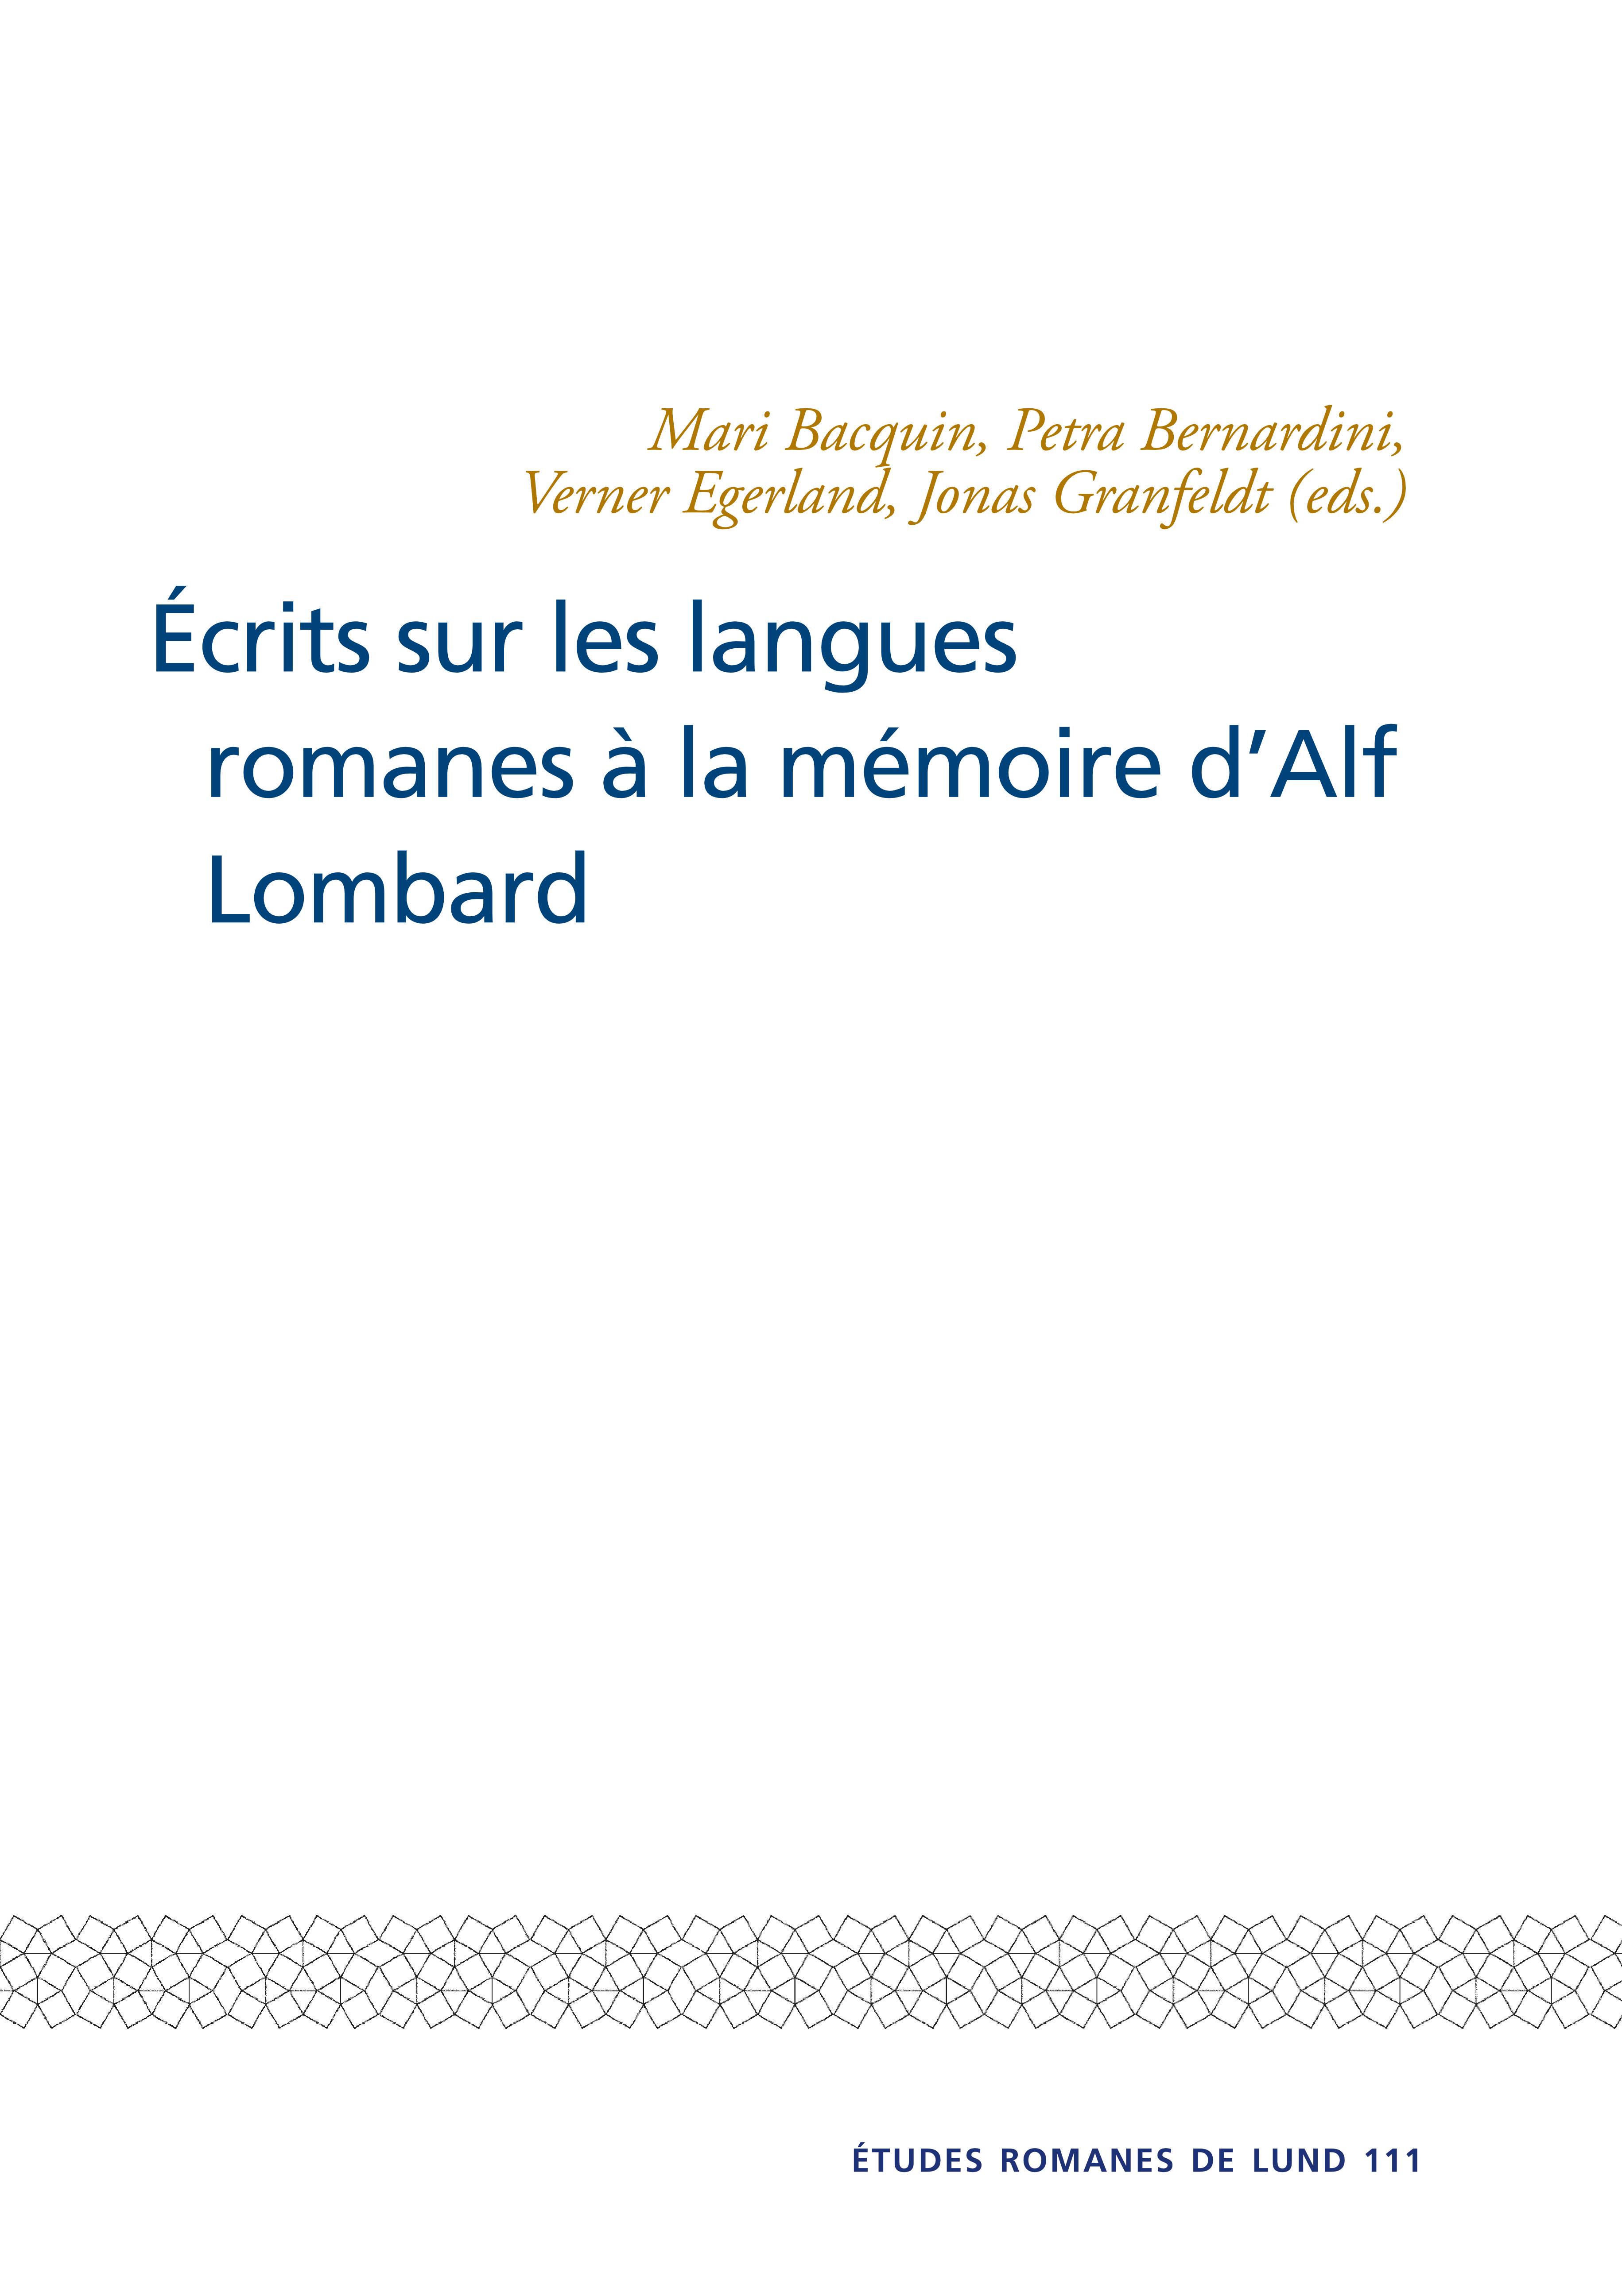 Ecrits sur les langues romanes a la memoire dAlf Lombard